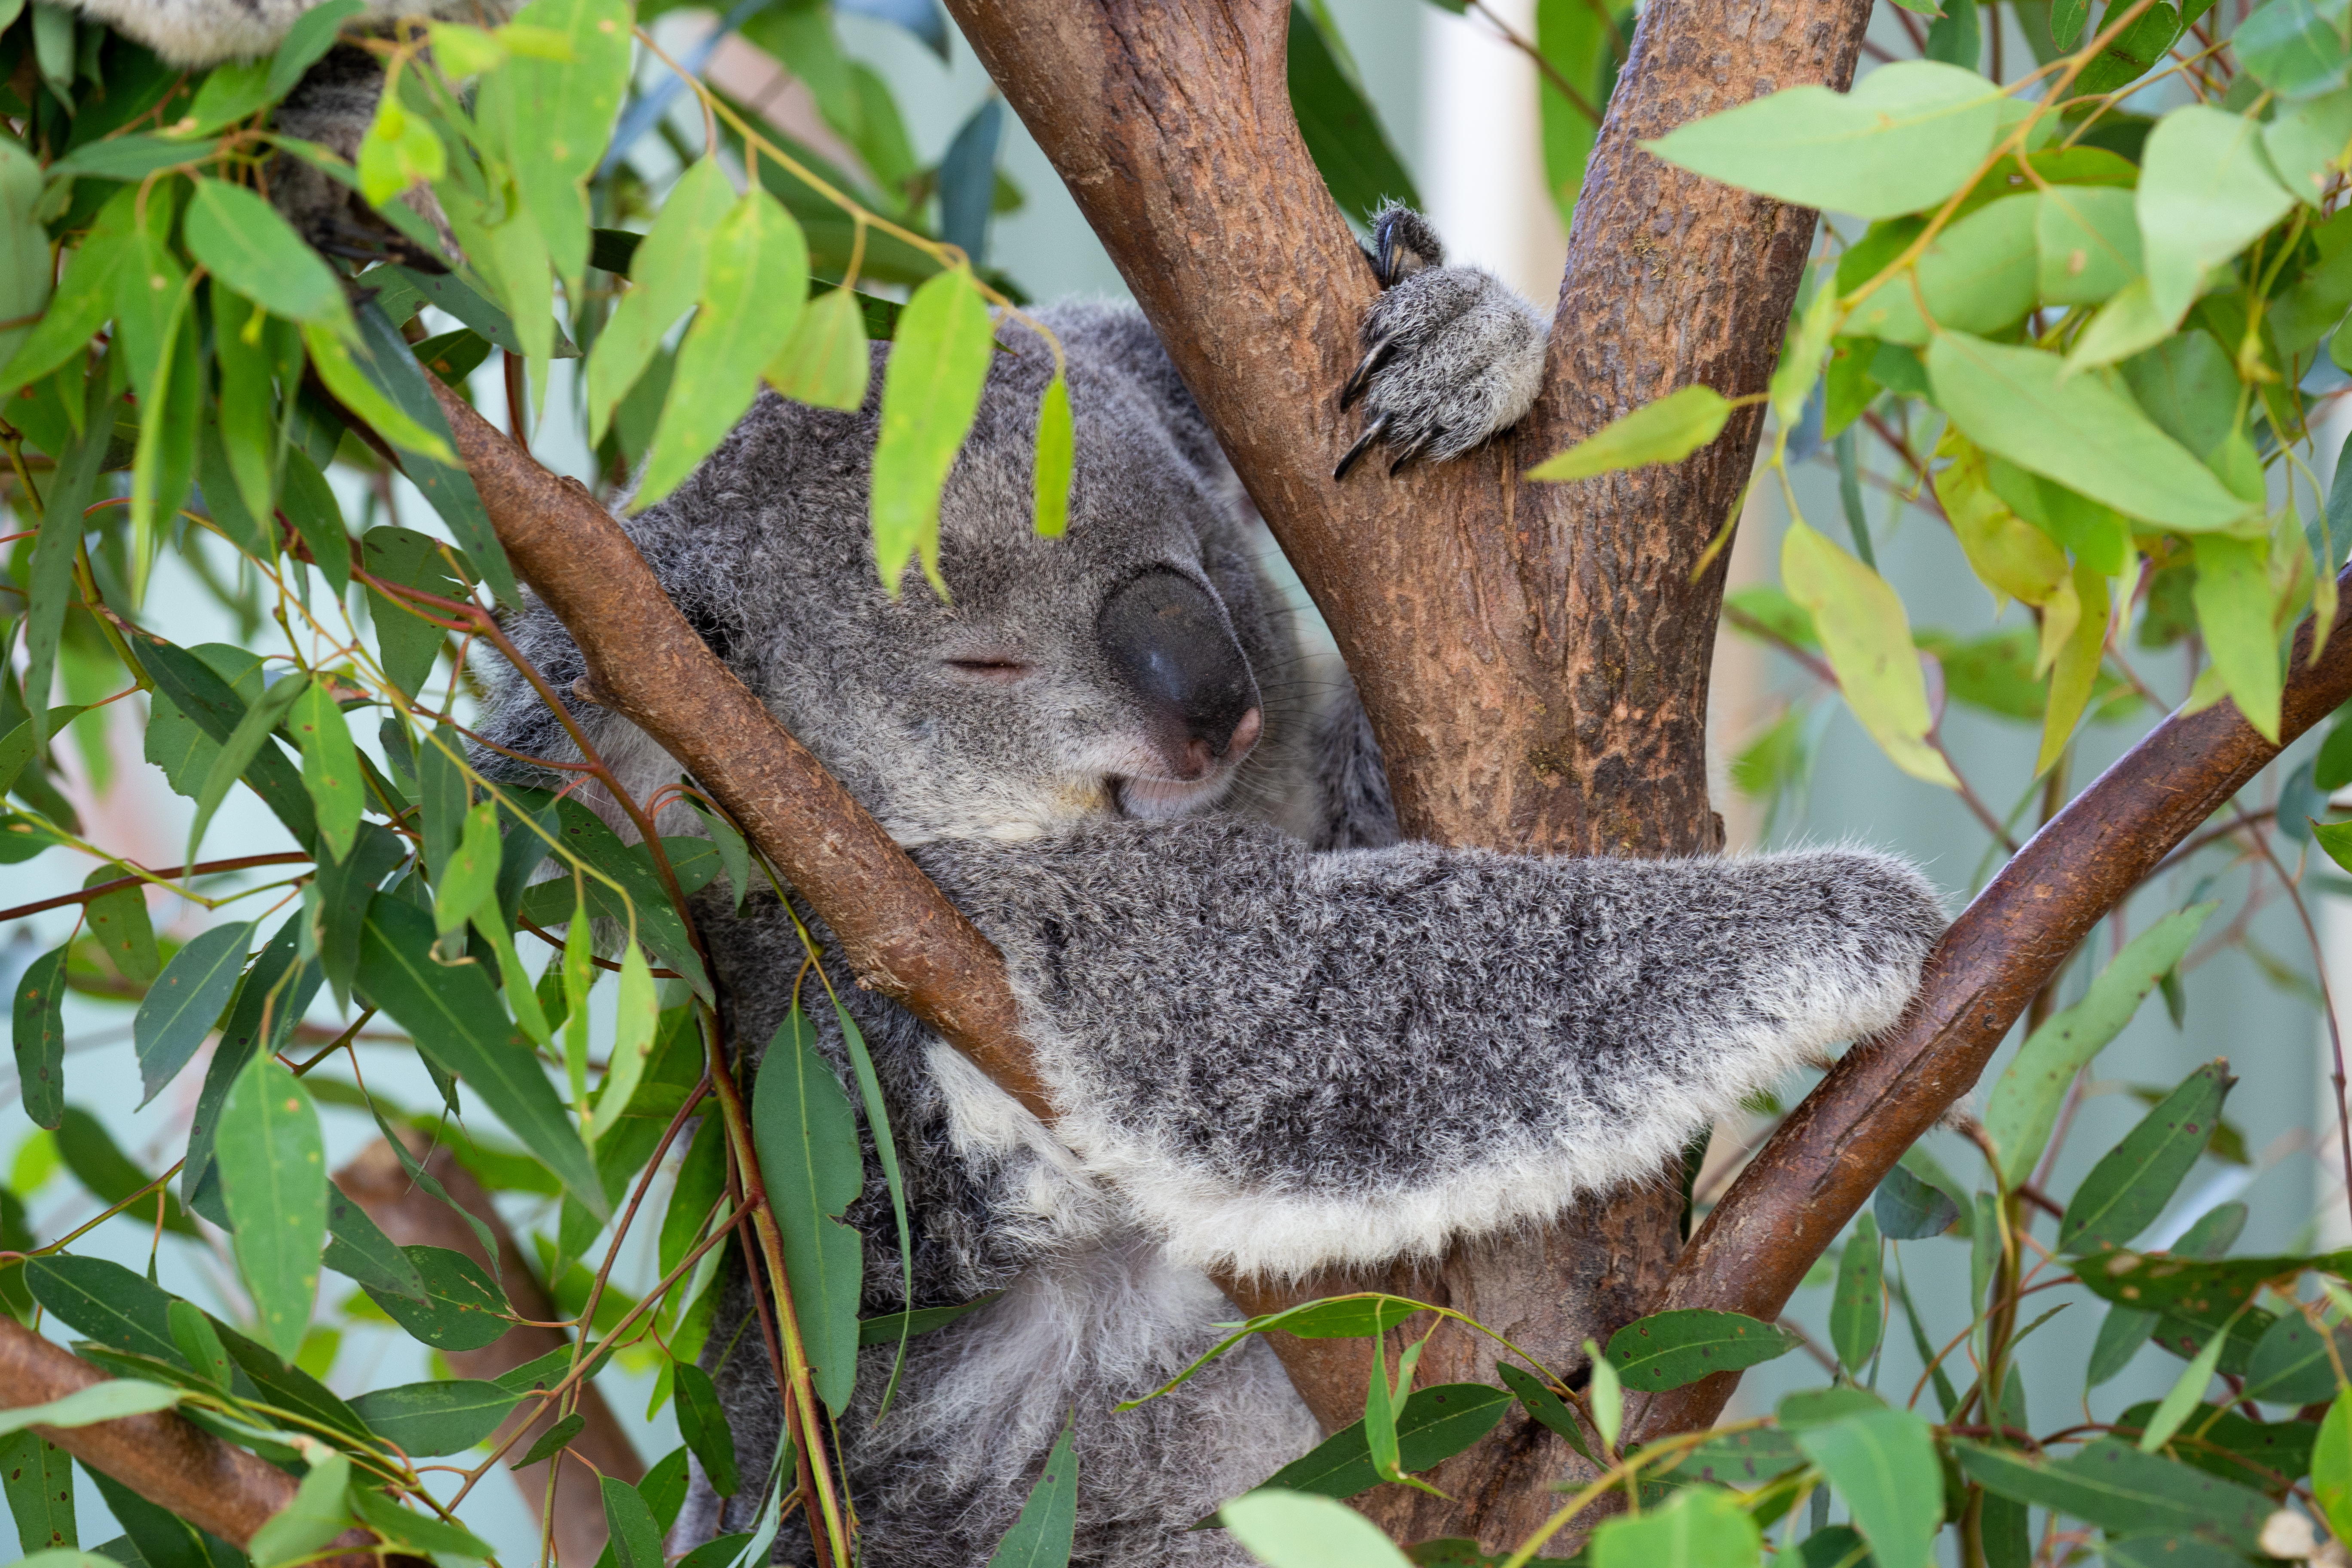 WILD LIFE Sydney Zoo Koala